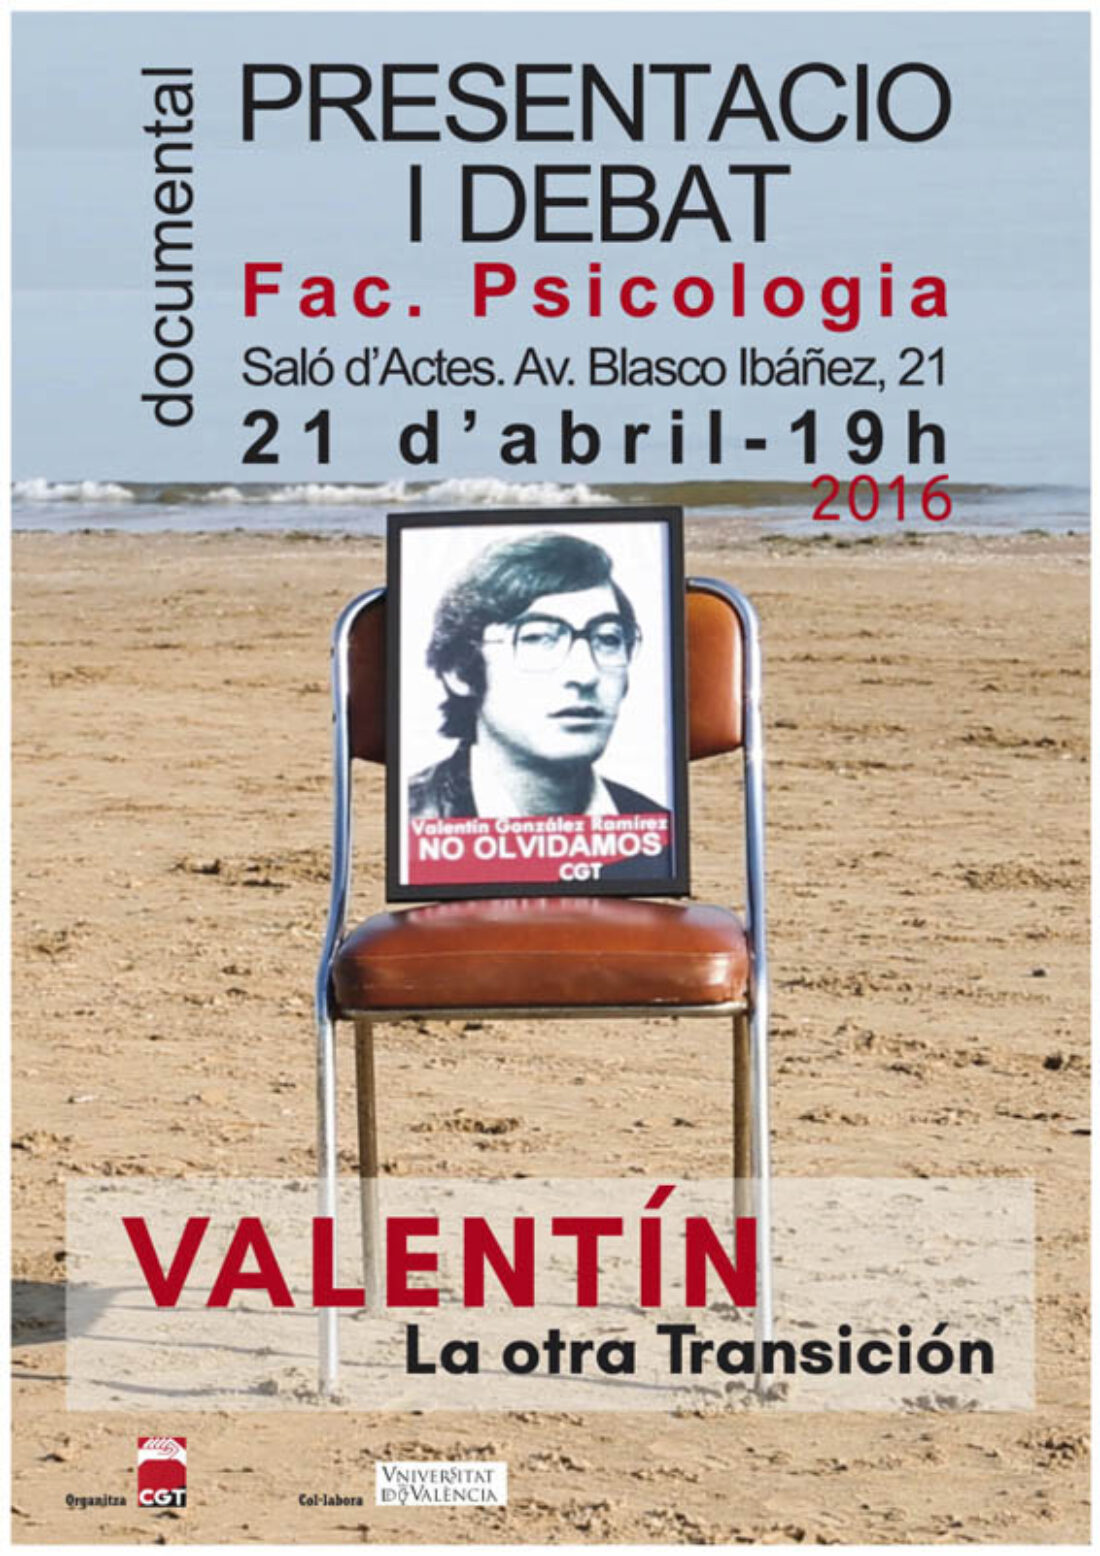 21-a Valencia: Segunda proyección del documental “Valentín. La otra Transición”